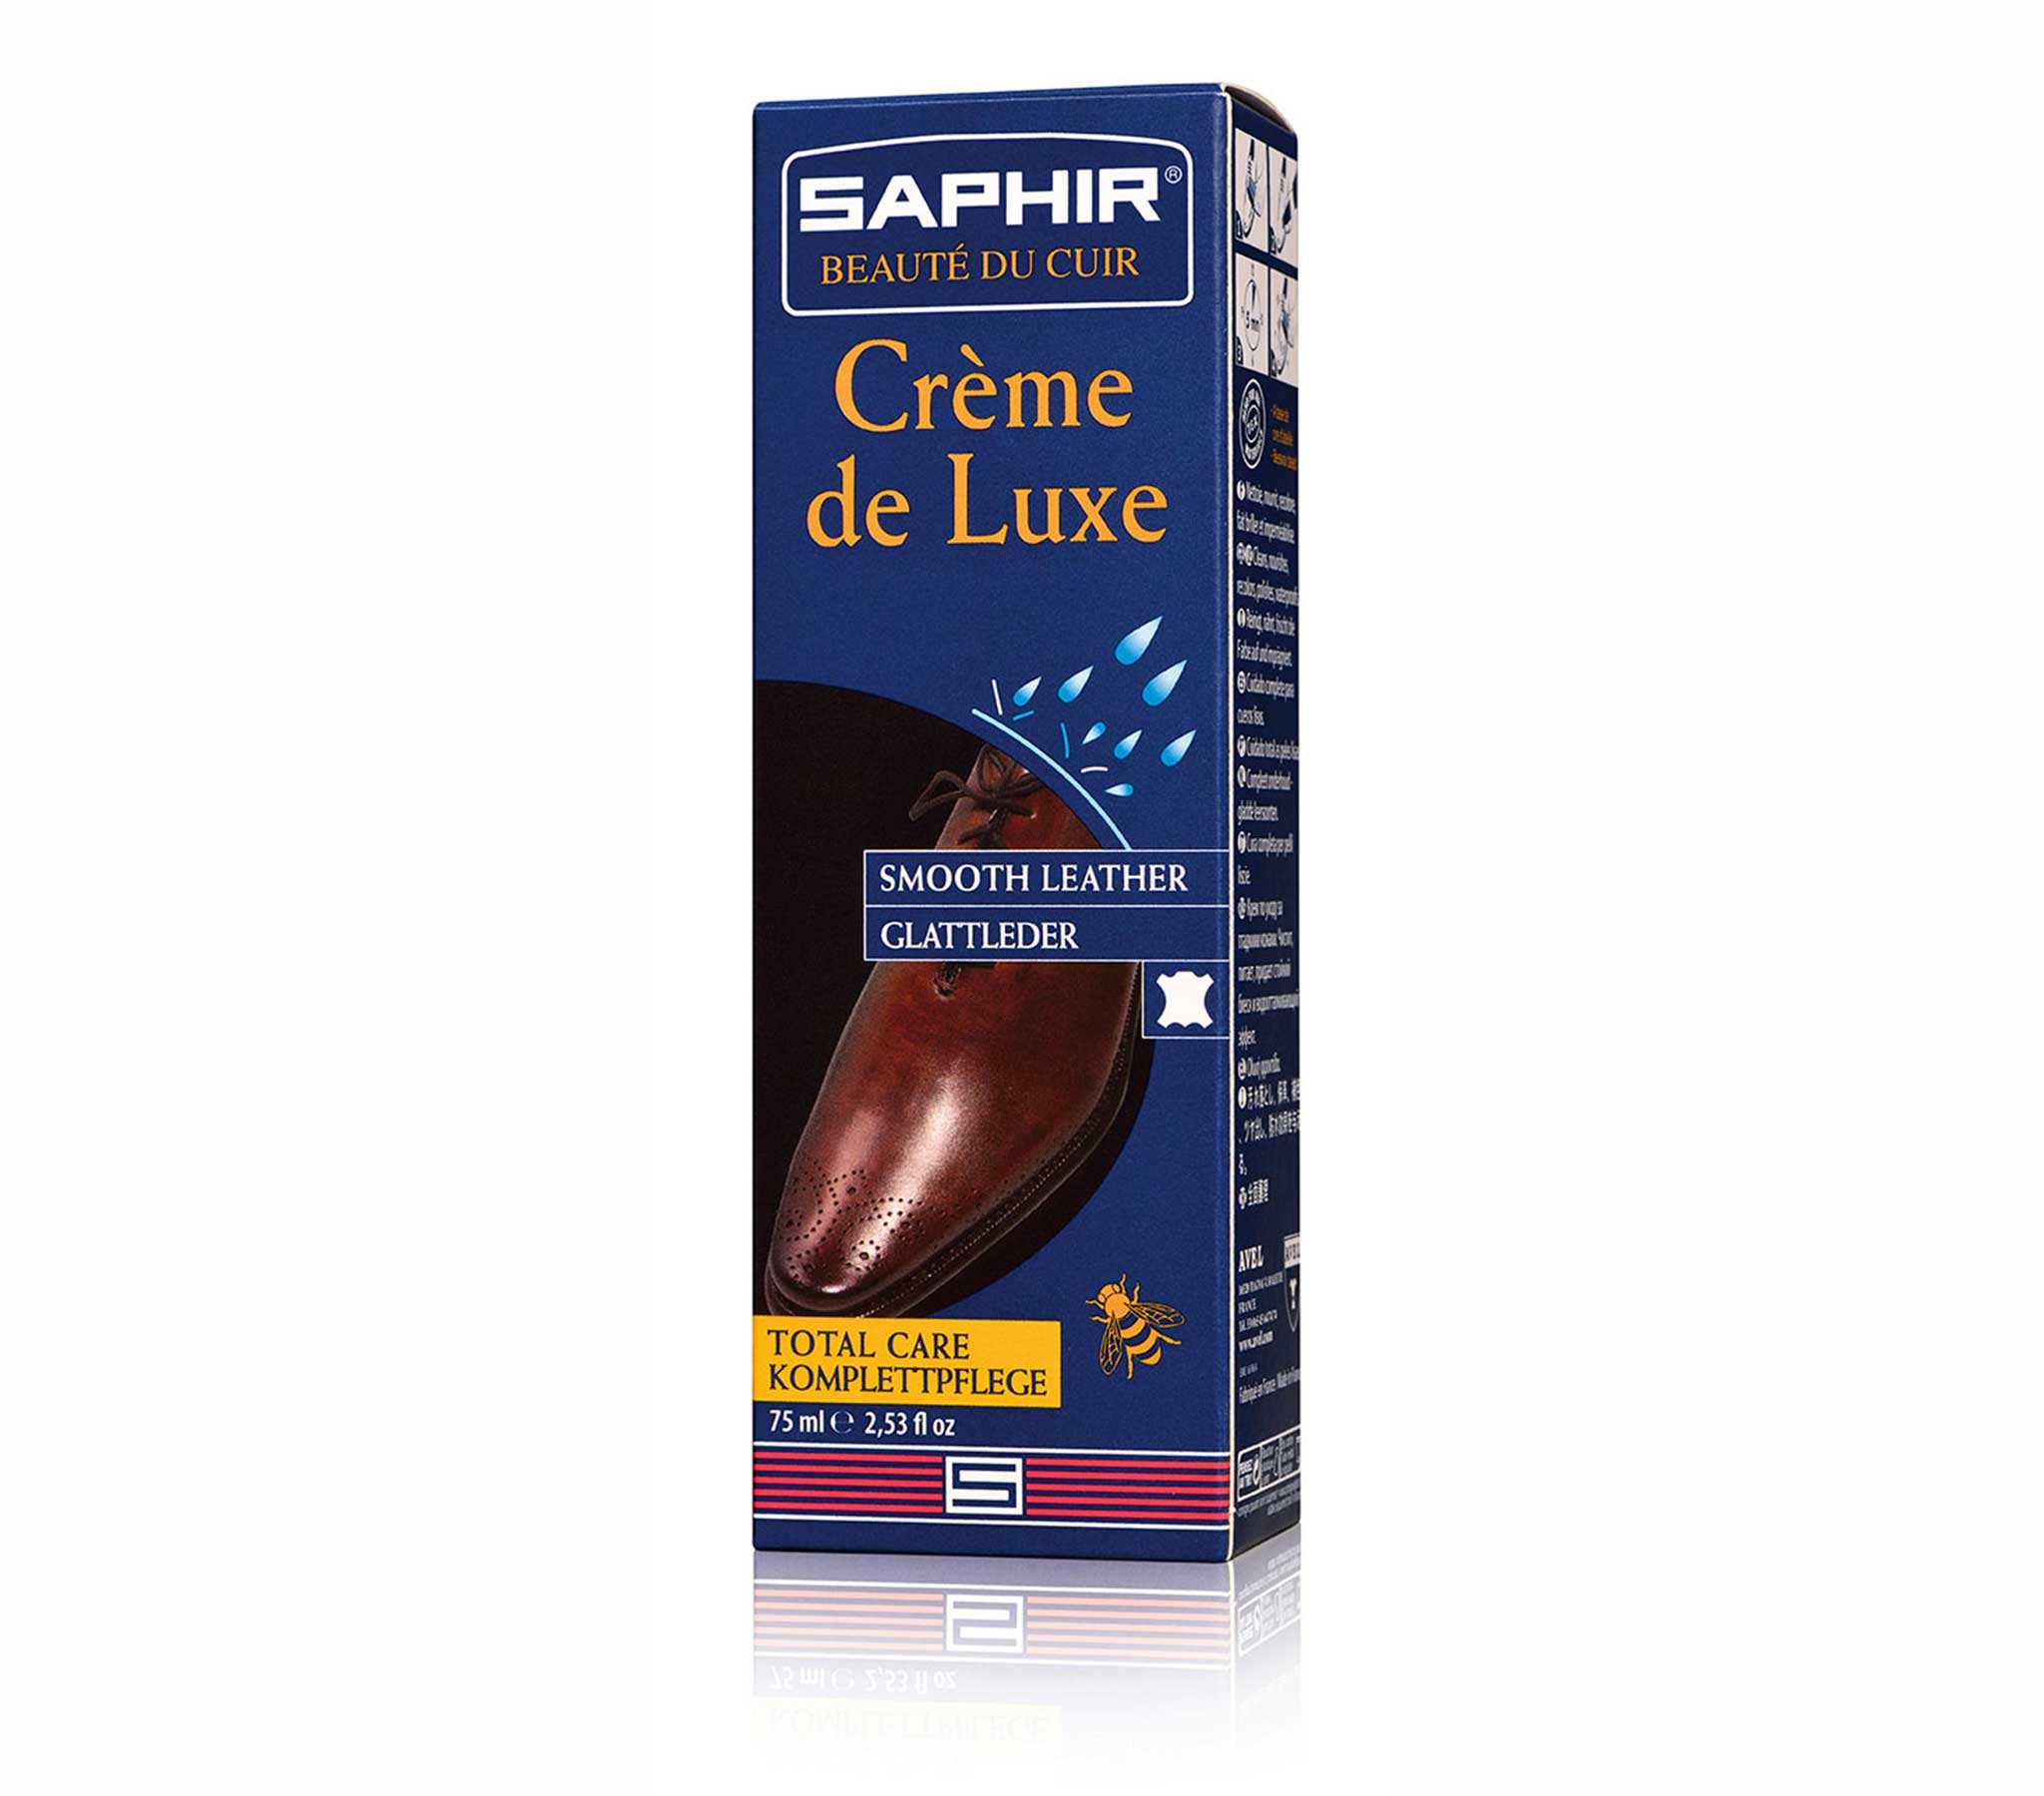 Saphir Pate de Luxe Wax 100ml - Light Brown #03